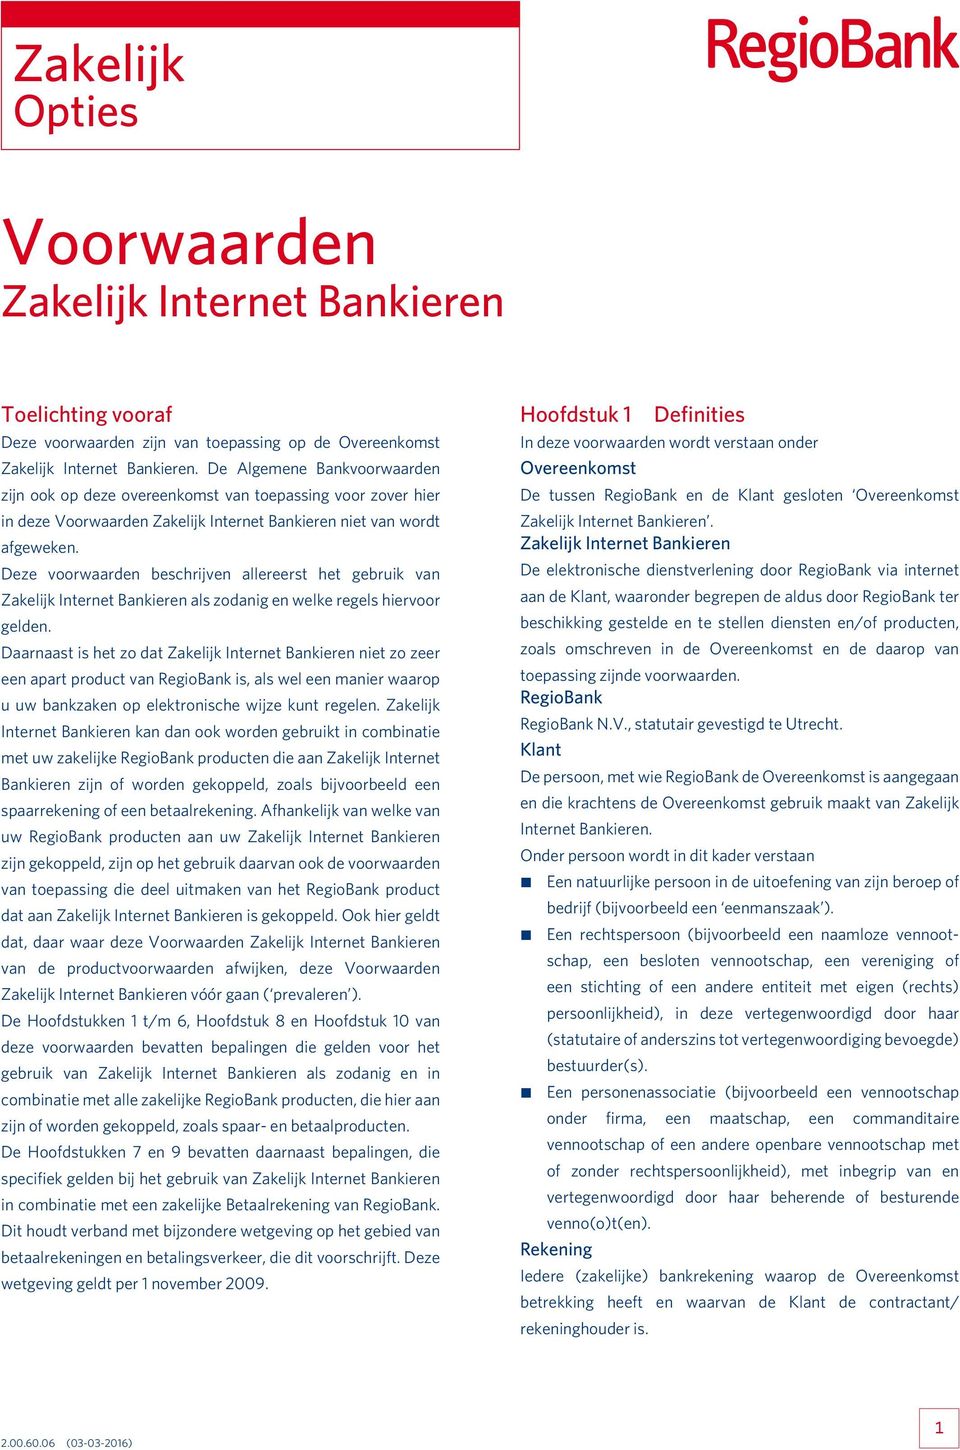 Deze voorwaarden beschrijven allereerst het gebruik van Zakelijk Internet Bankieren als zodanig en welke regels hiervoor gelden.